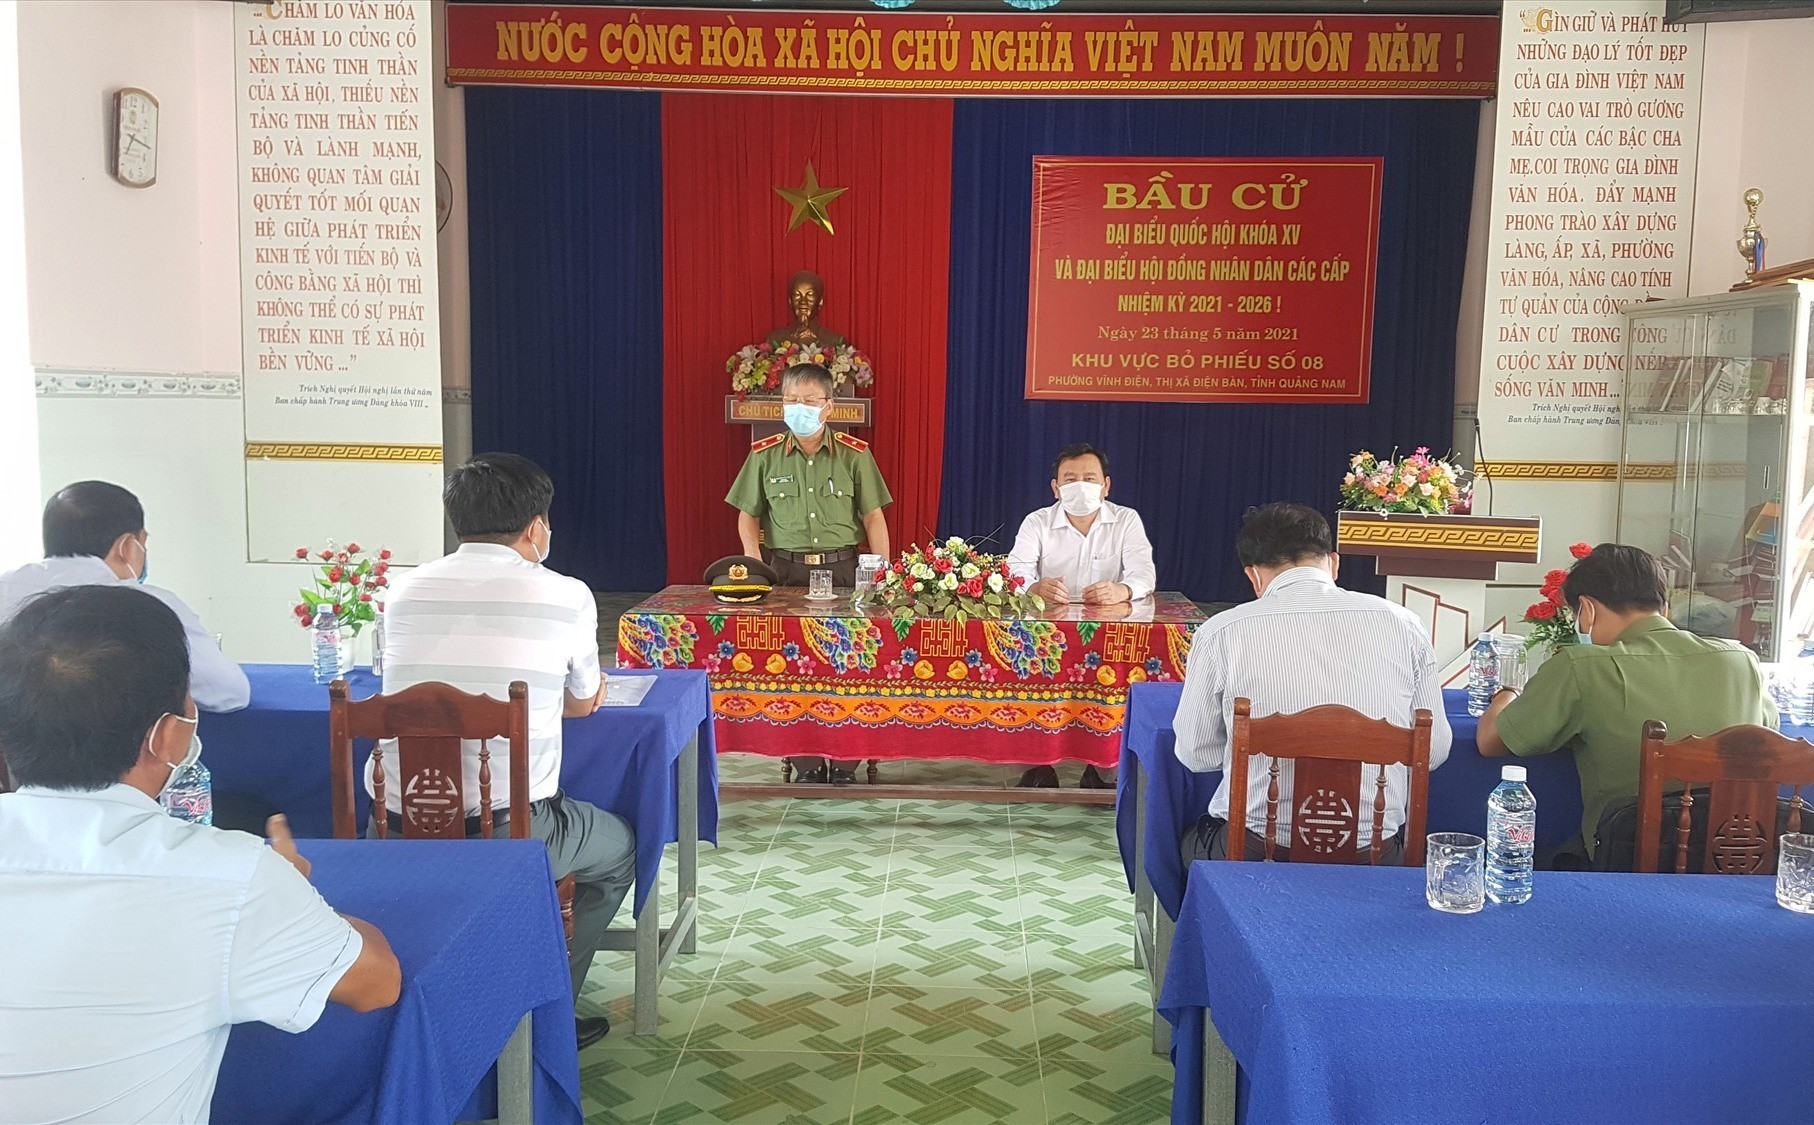 Đồng chí Nguyễn Đức Dũng lưu ý các địa phương ở Điện Bàn phải song hành đảm bảo công tác bầu cử và phòng chống dịch bệnh. Ảnh: D.L